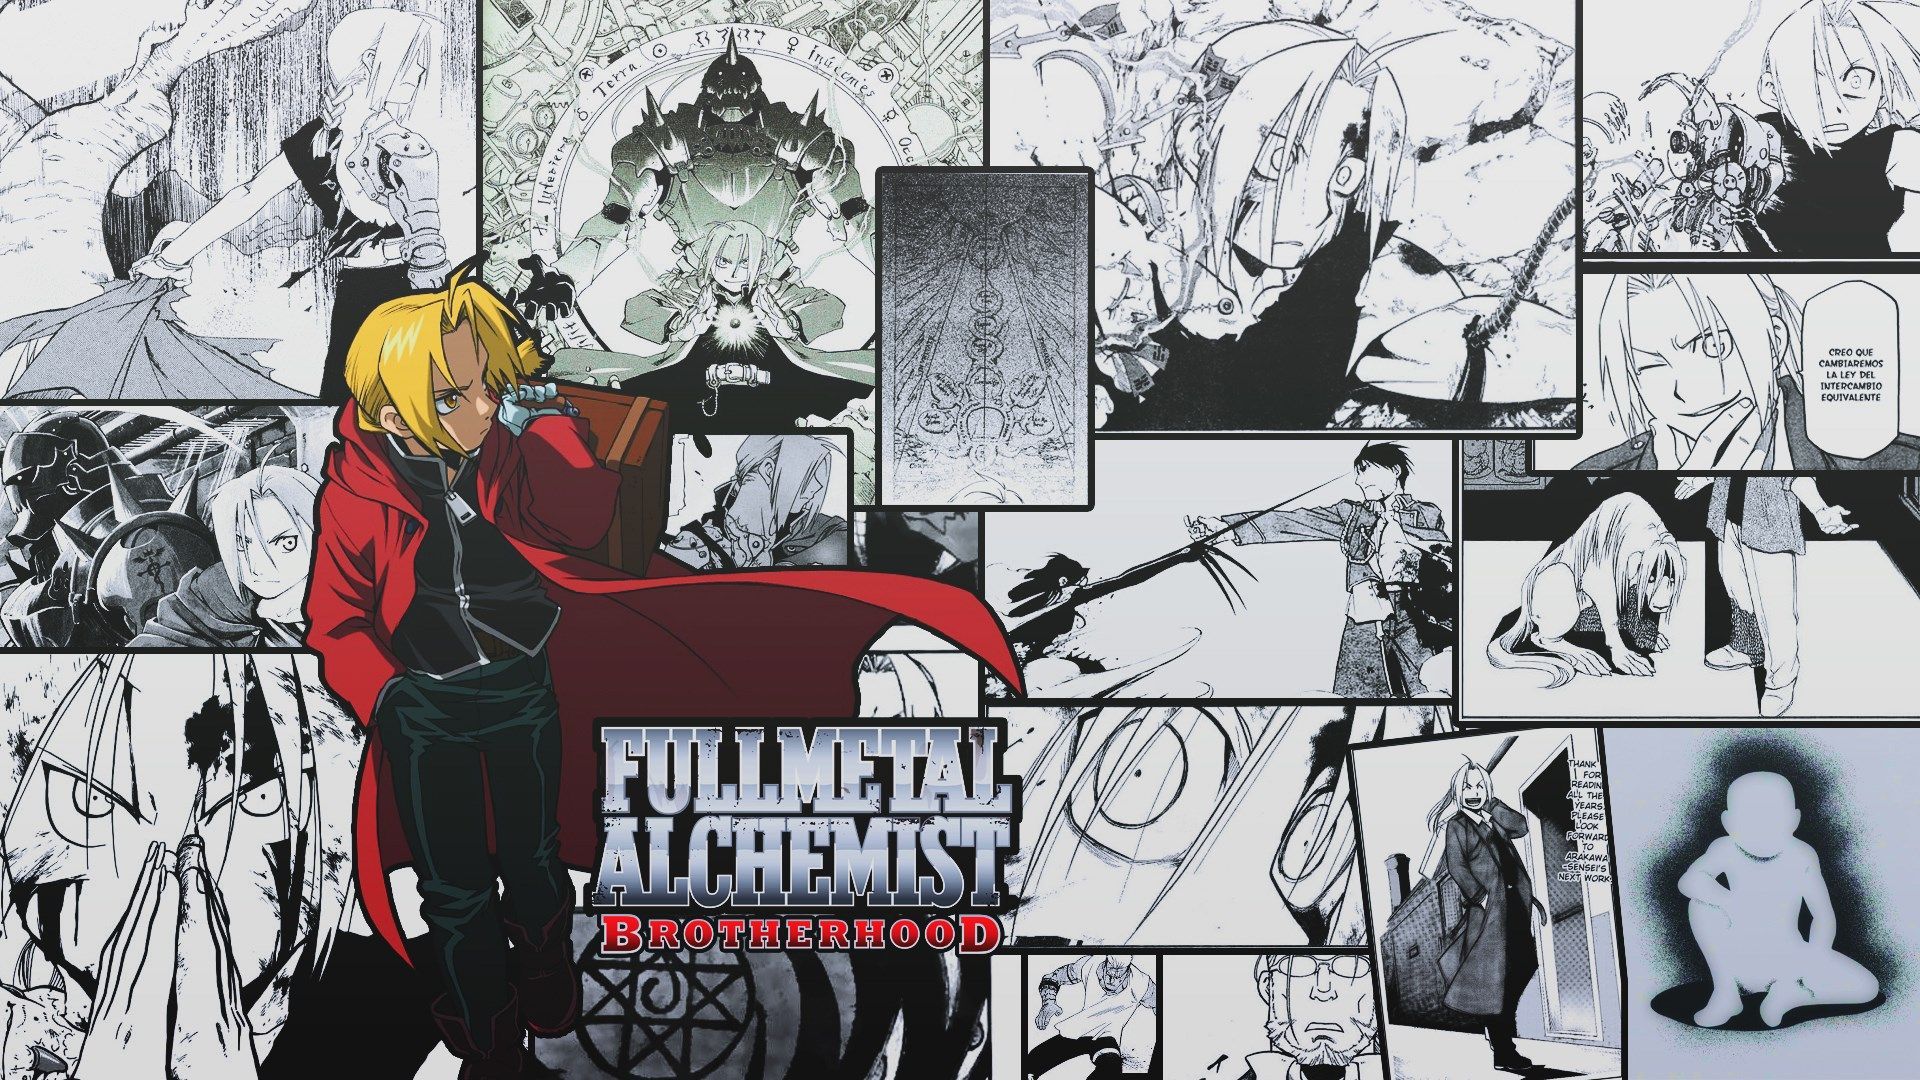 2017 03 26 Alchemist Image Desktop Nexus Wallpaper,. Fullmetal Alchemist, Fullmetal Alchemist Brotherhood, Alchemist